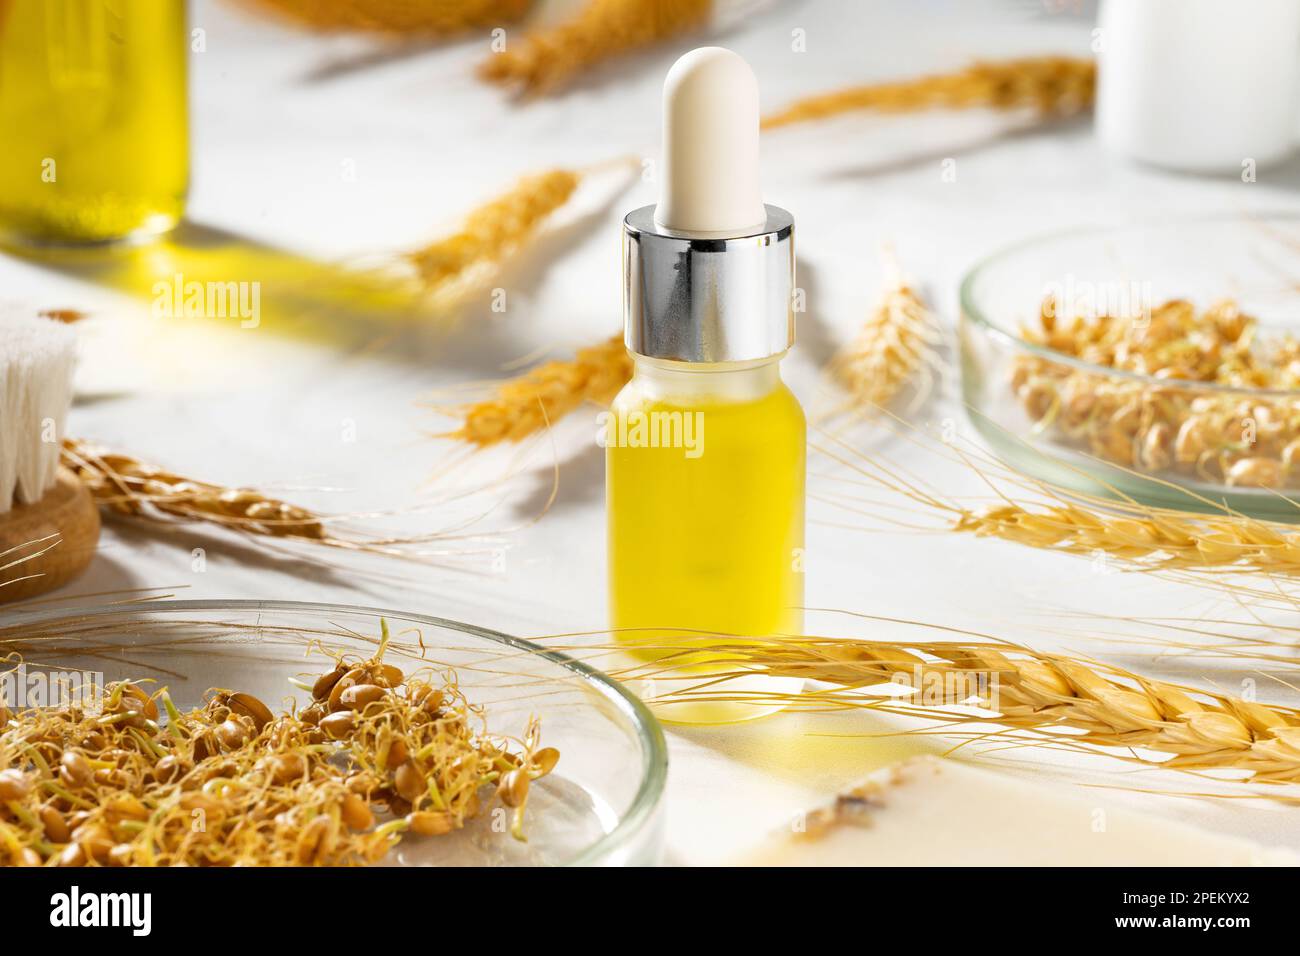 Eine konzeptionelle Zusammensetzung von ätherischem Weizenöl, einer Badebürste und Weizenkeimen auf einem Marmortisch. Eine Flasche Körperöl mit einem Tropfer. Weizenserumöl Stockfoto